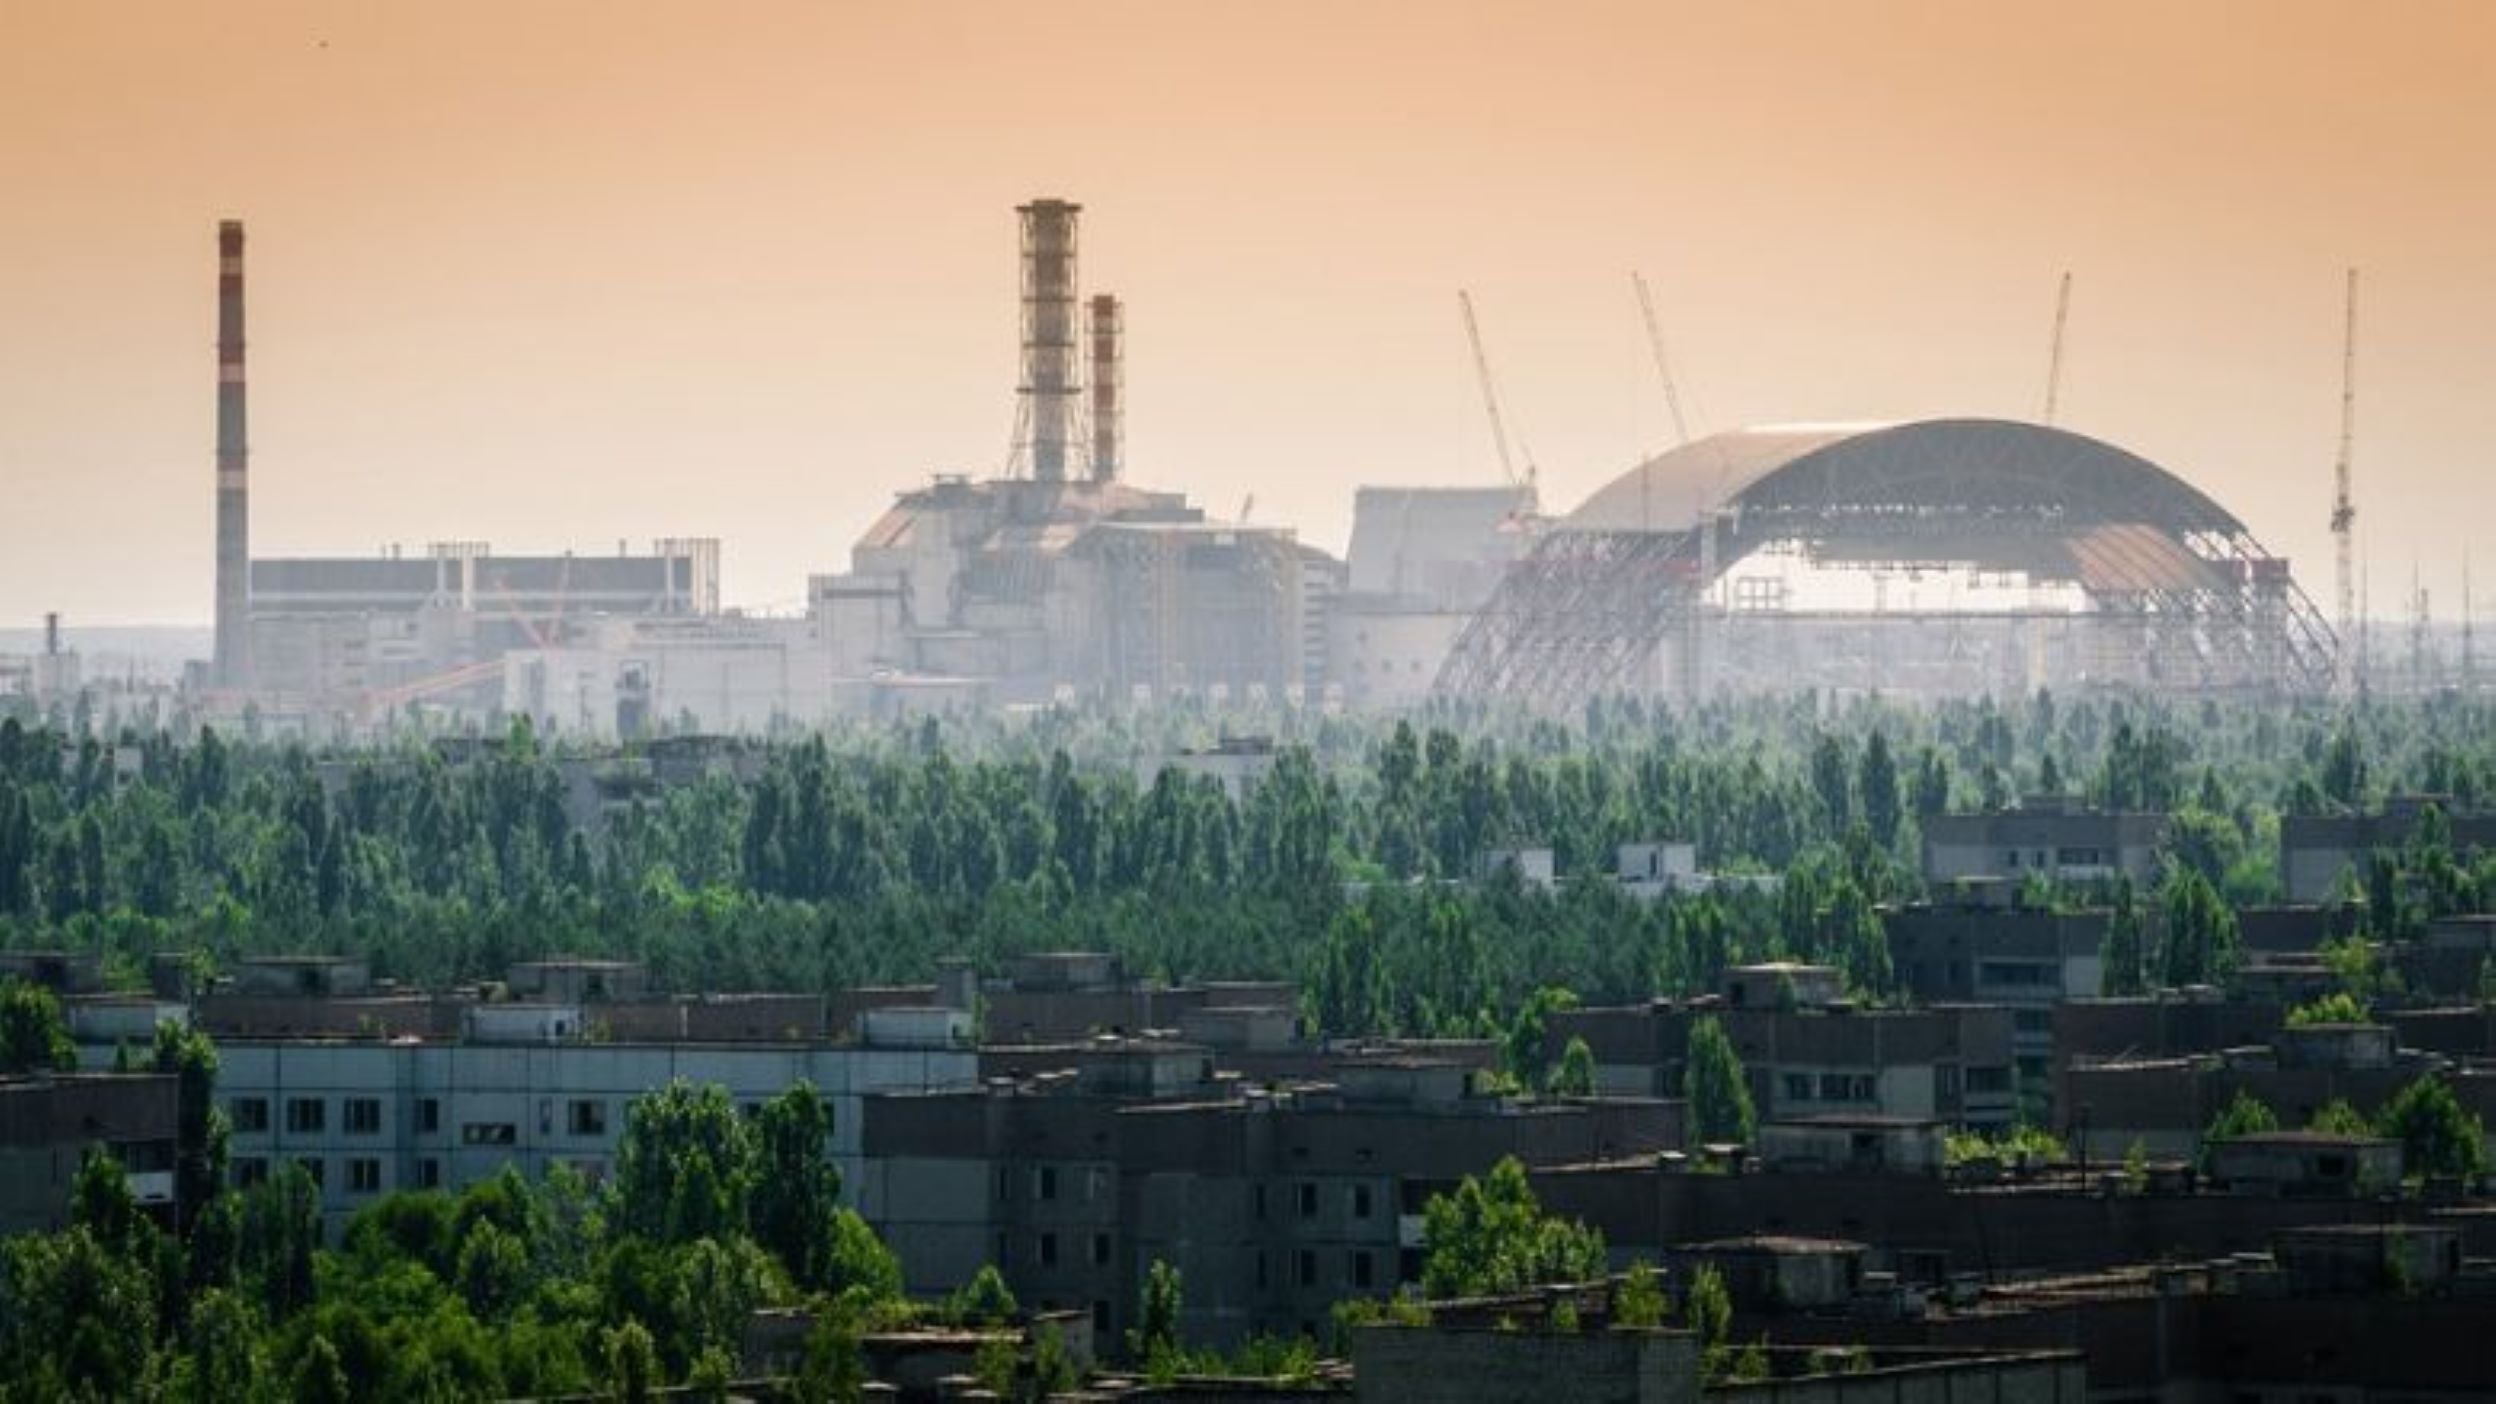 Renta variable europea: Actualización de la analogía con Chernóbil a causa del aumento de la inflación